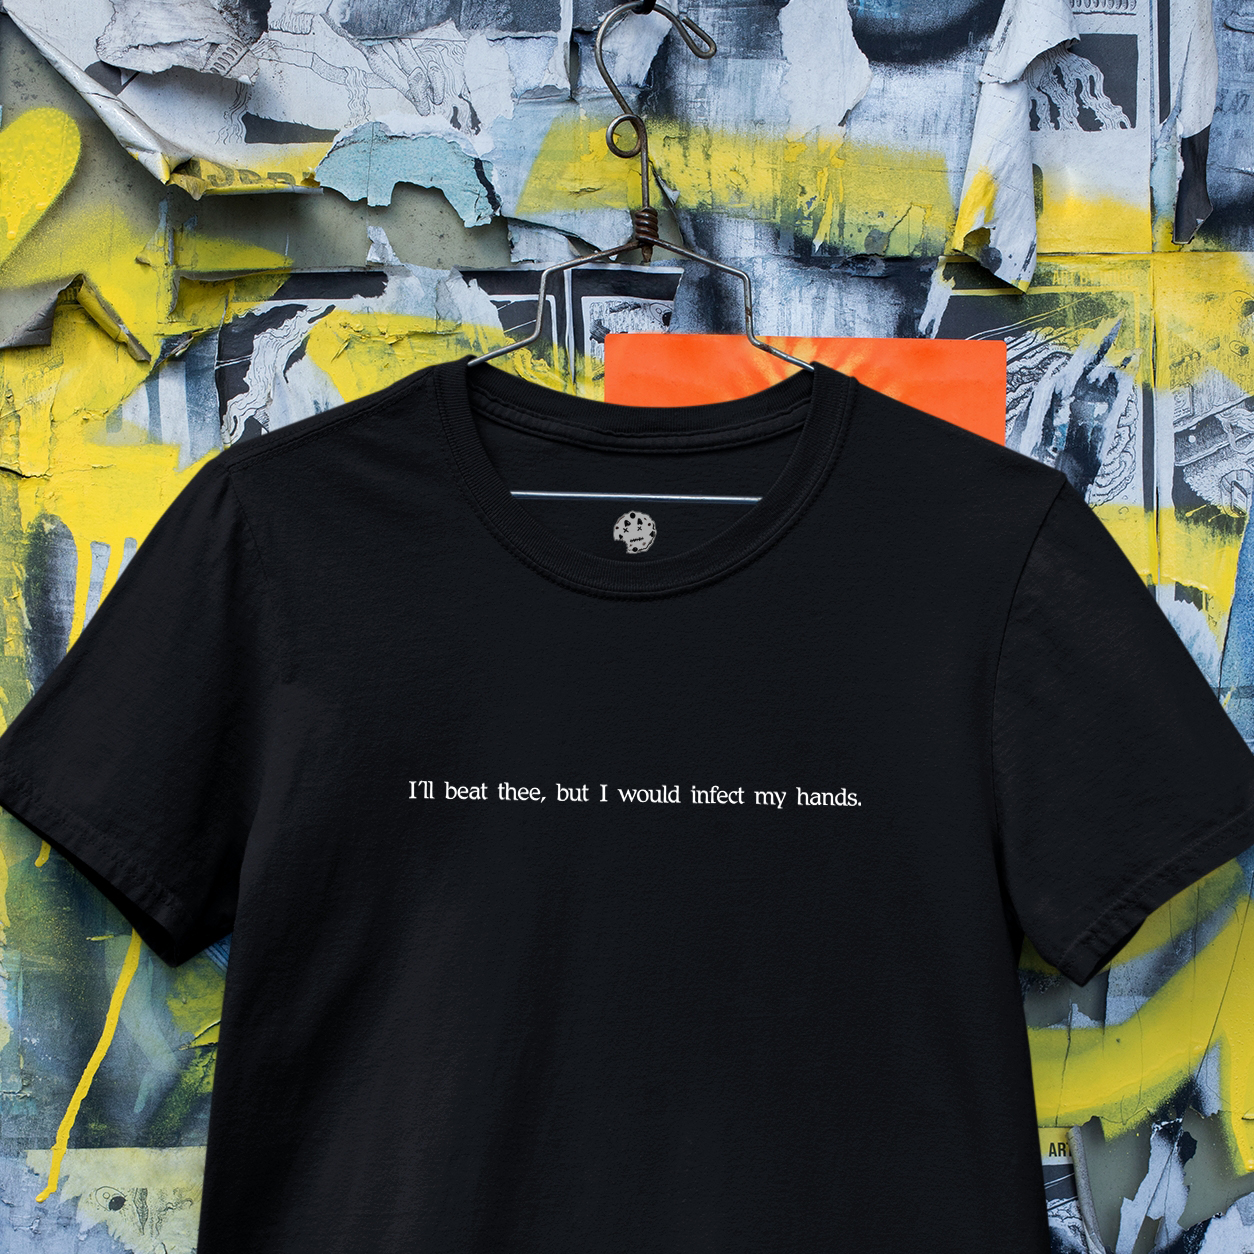 Shakespearean insult on black hanging t-shirt.